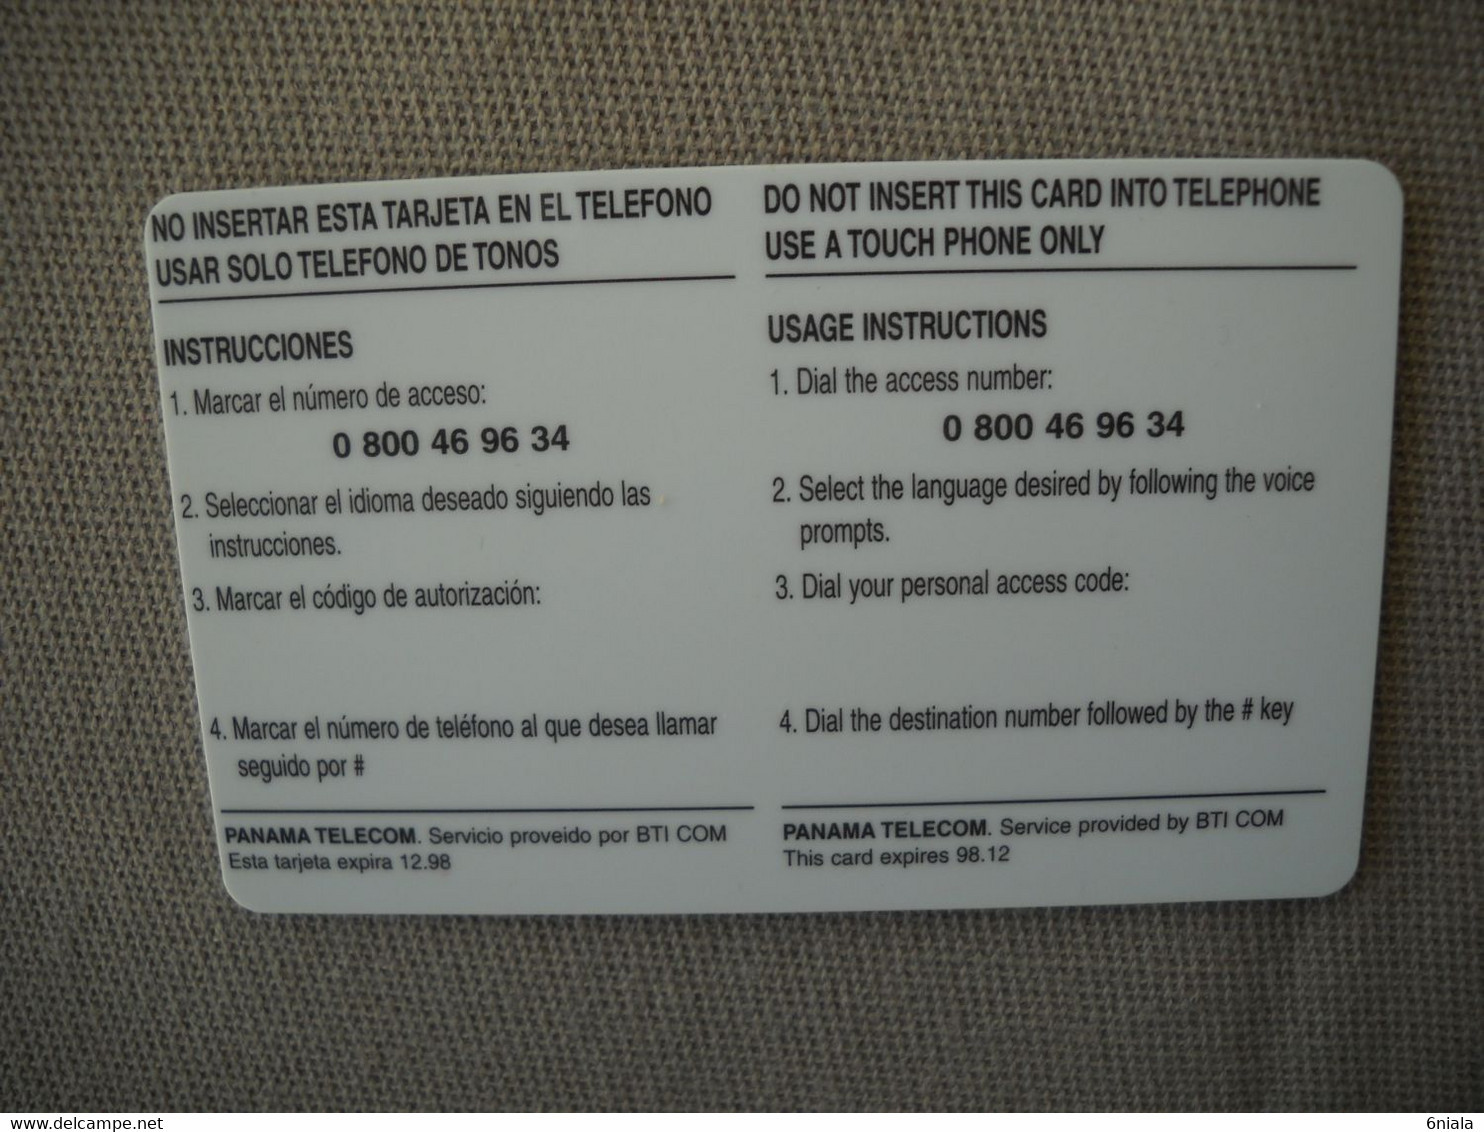 6867 Télécarte Collection  VOITURE FERRARI 250 GTO PANAMA     (scans Recto Verso)  Carte Téléphonique - Auto's